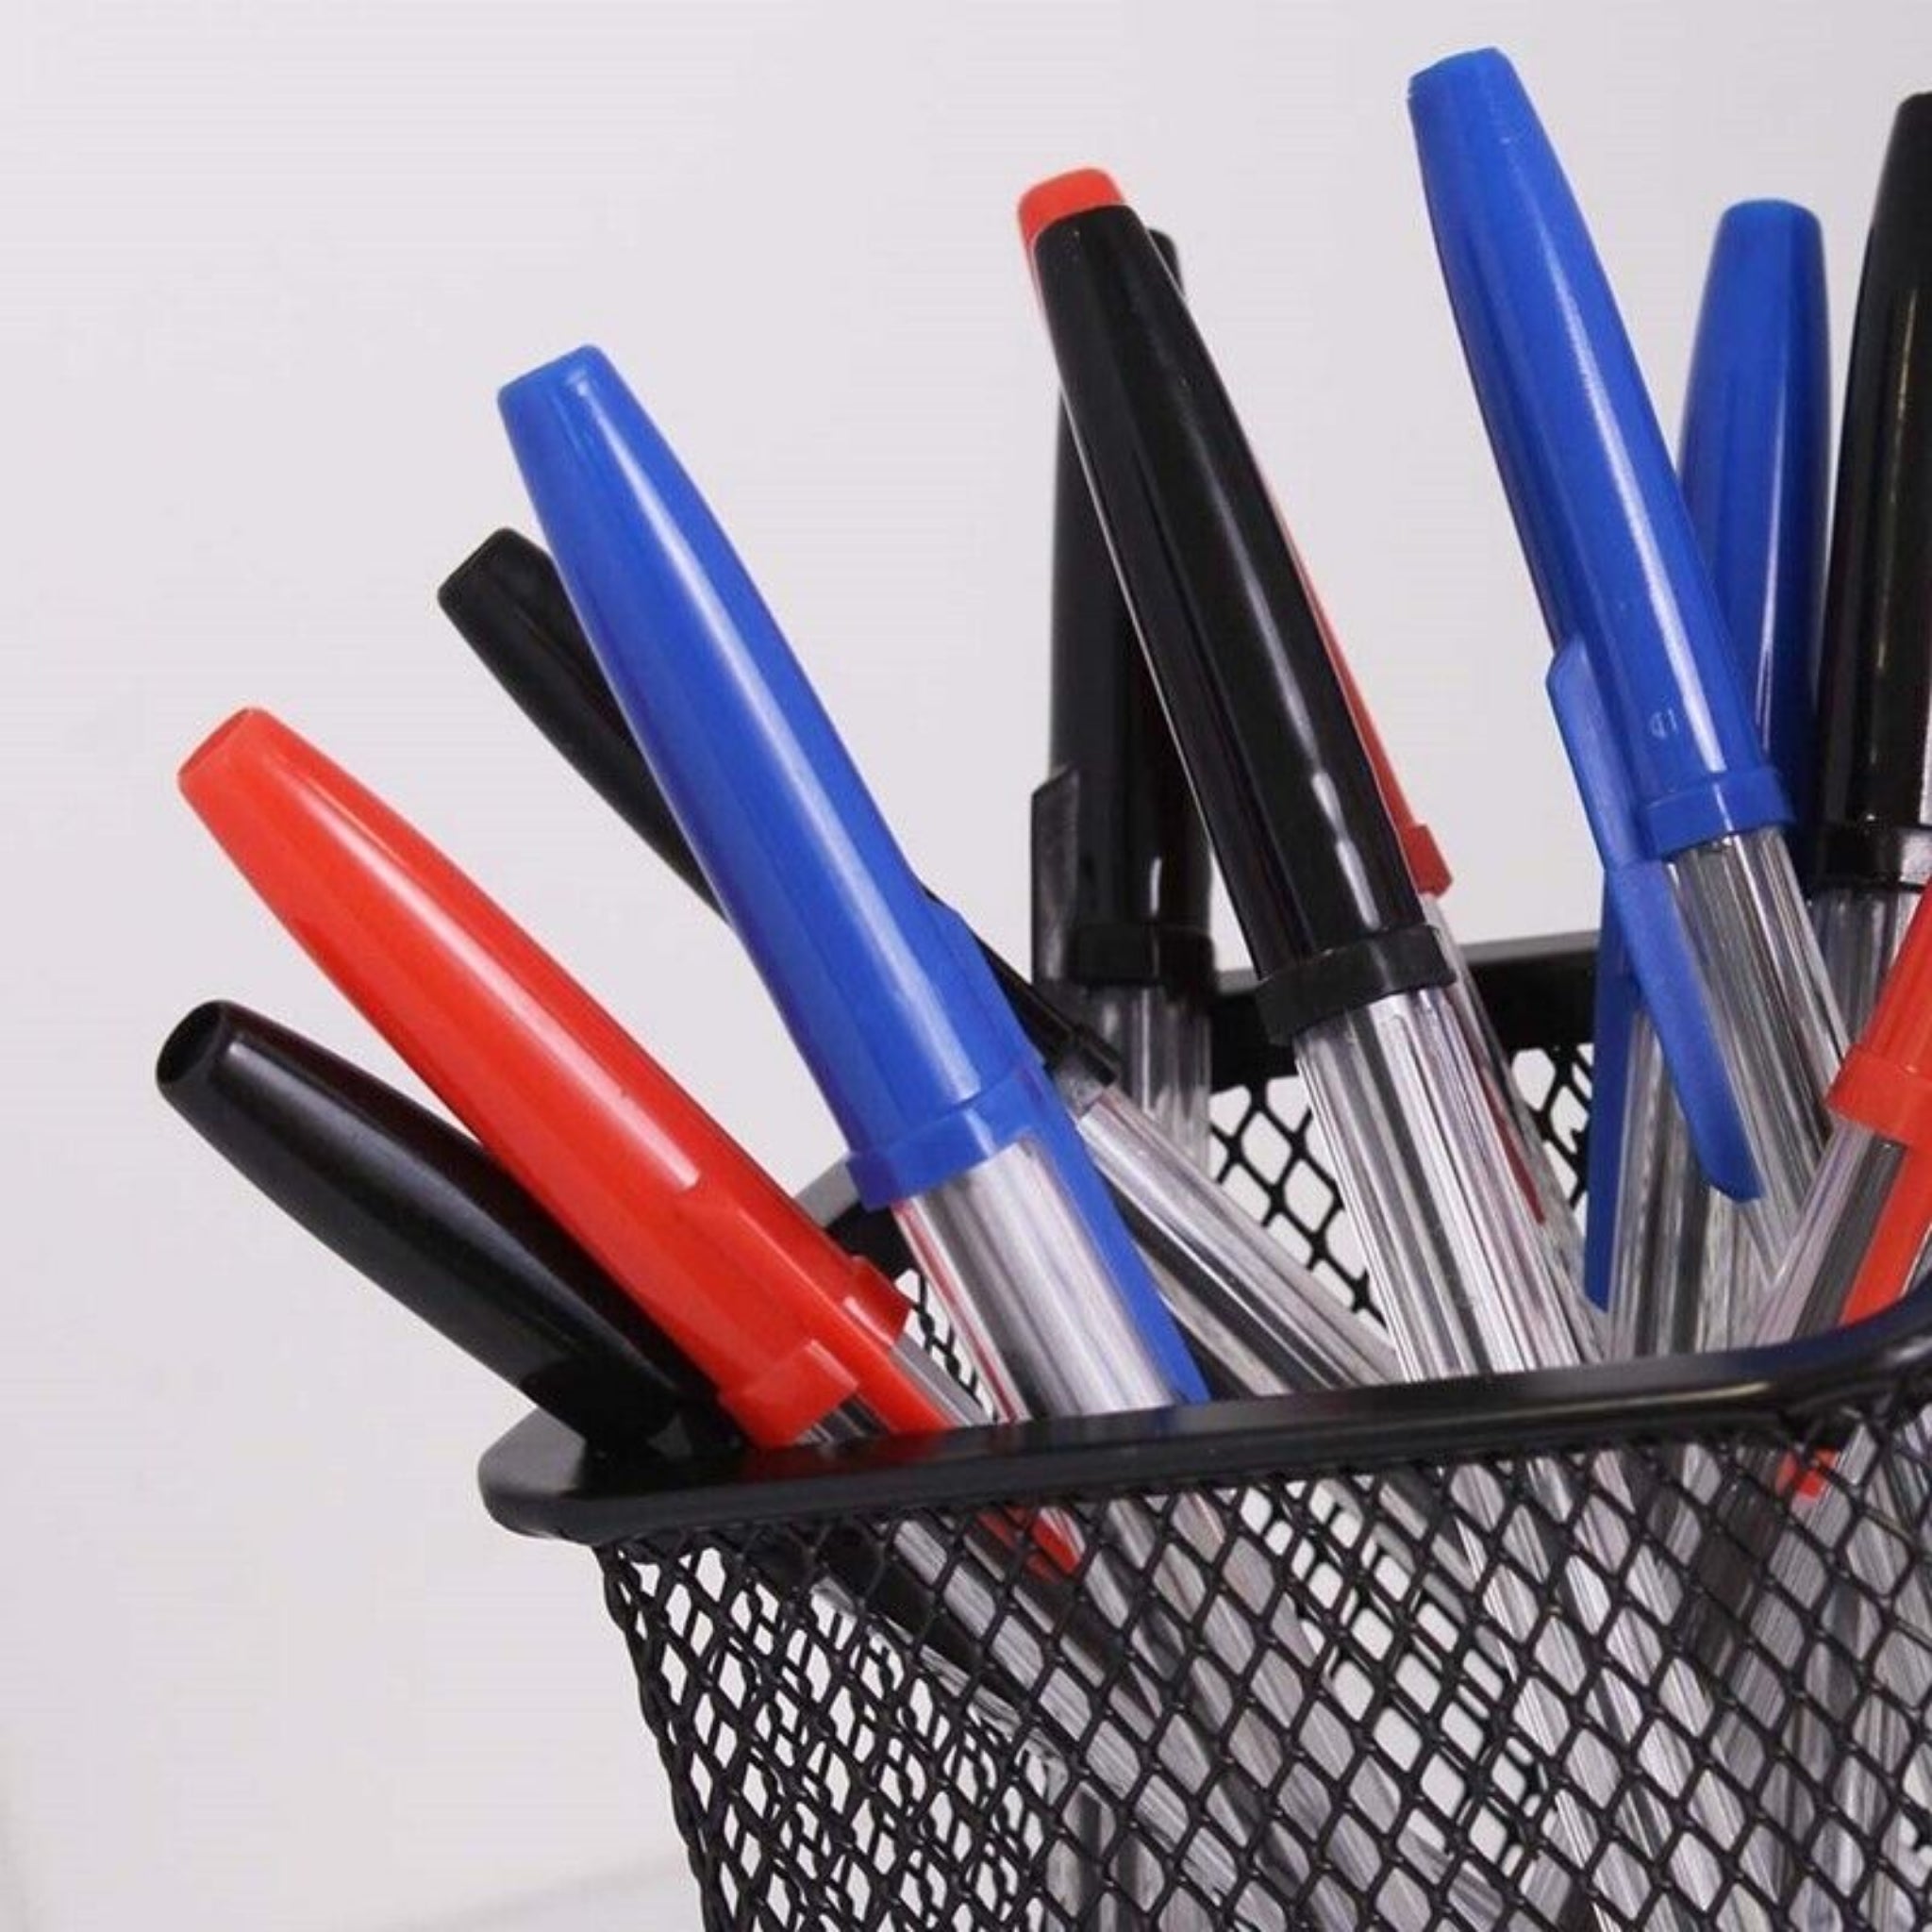 Beclen Harp 24 Ballpoint Pens Set | High Quality Medium Ball Point Pen Biros Black Blue Red